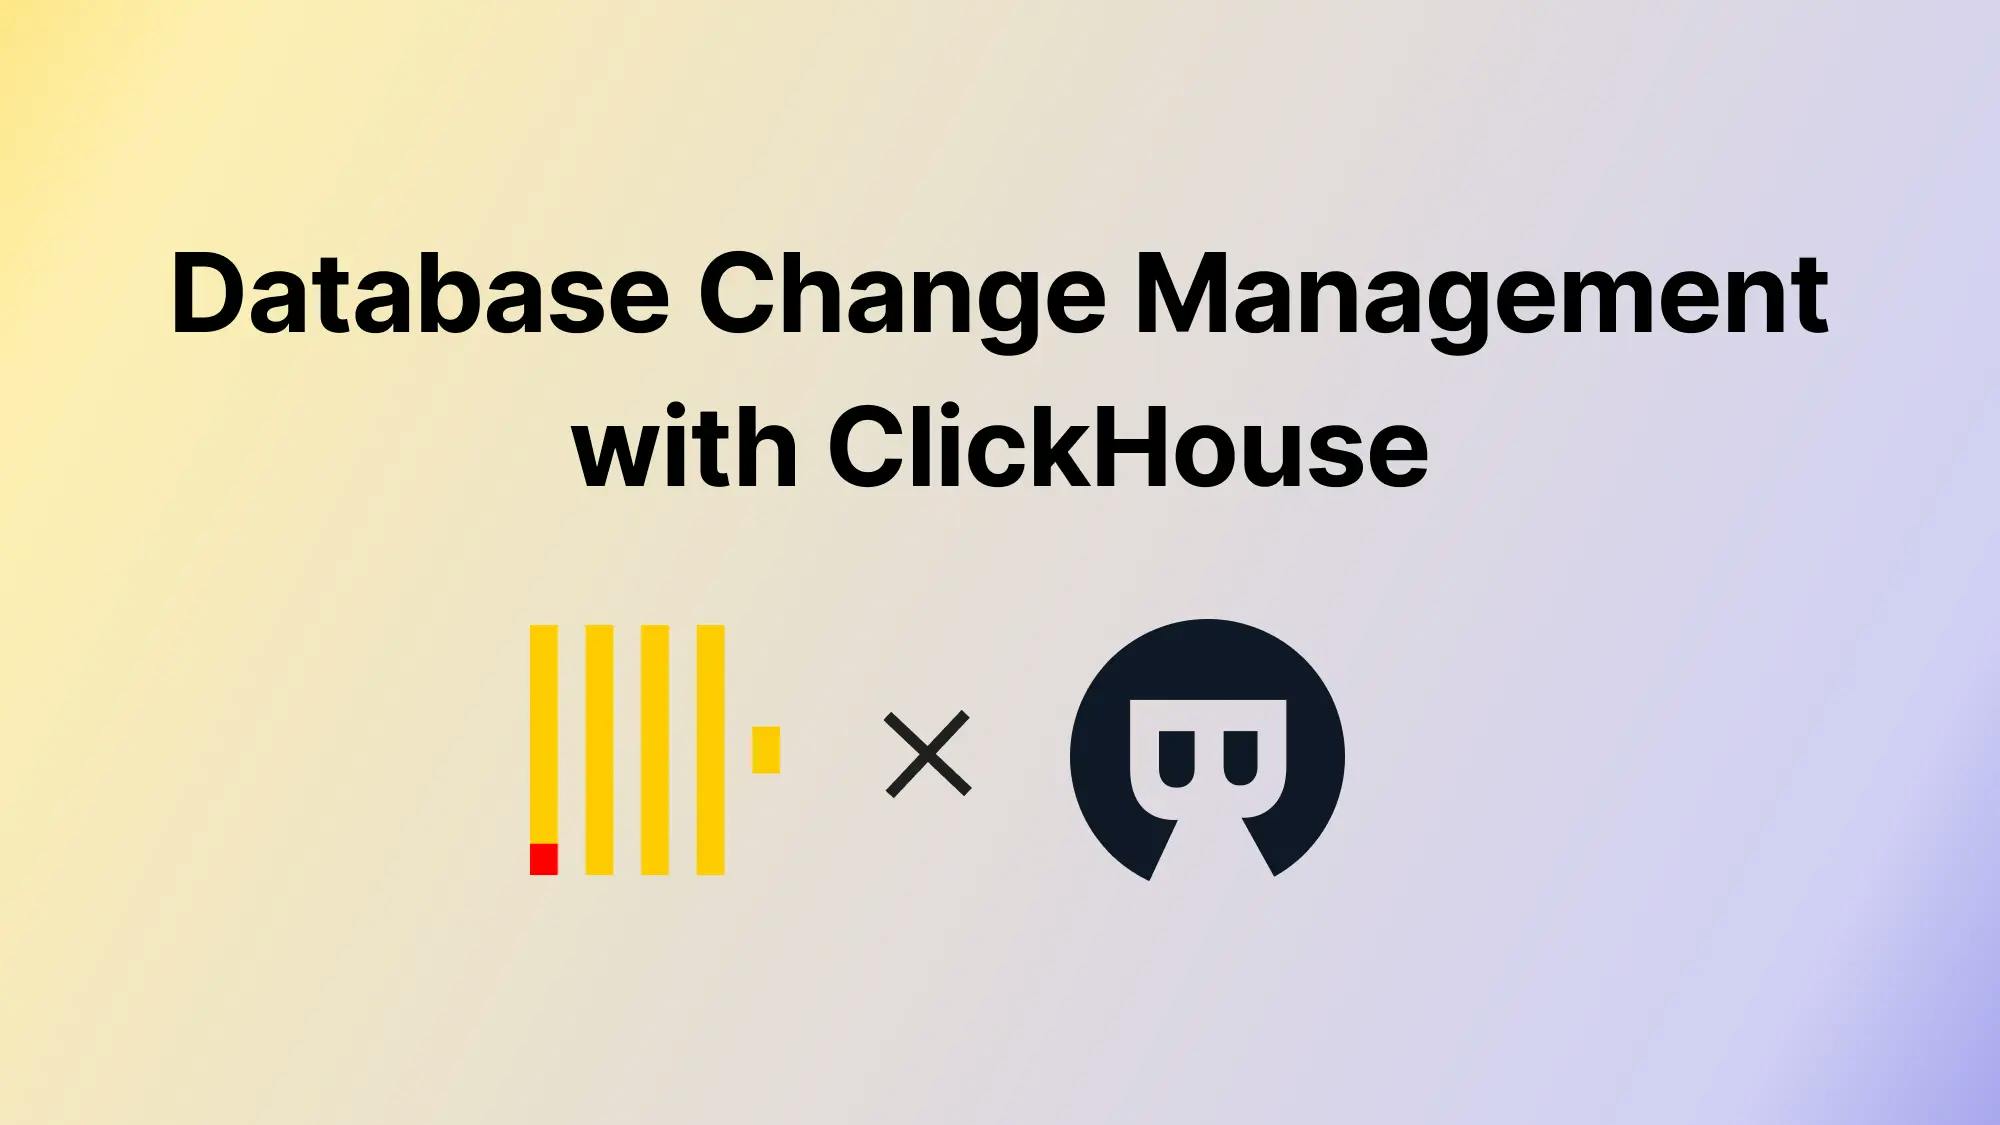 DevOps: Database Change Management with ClickHouse